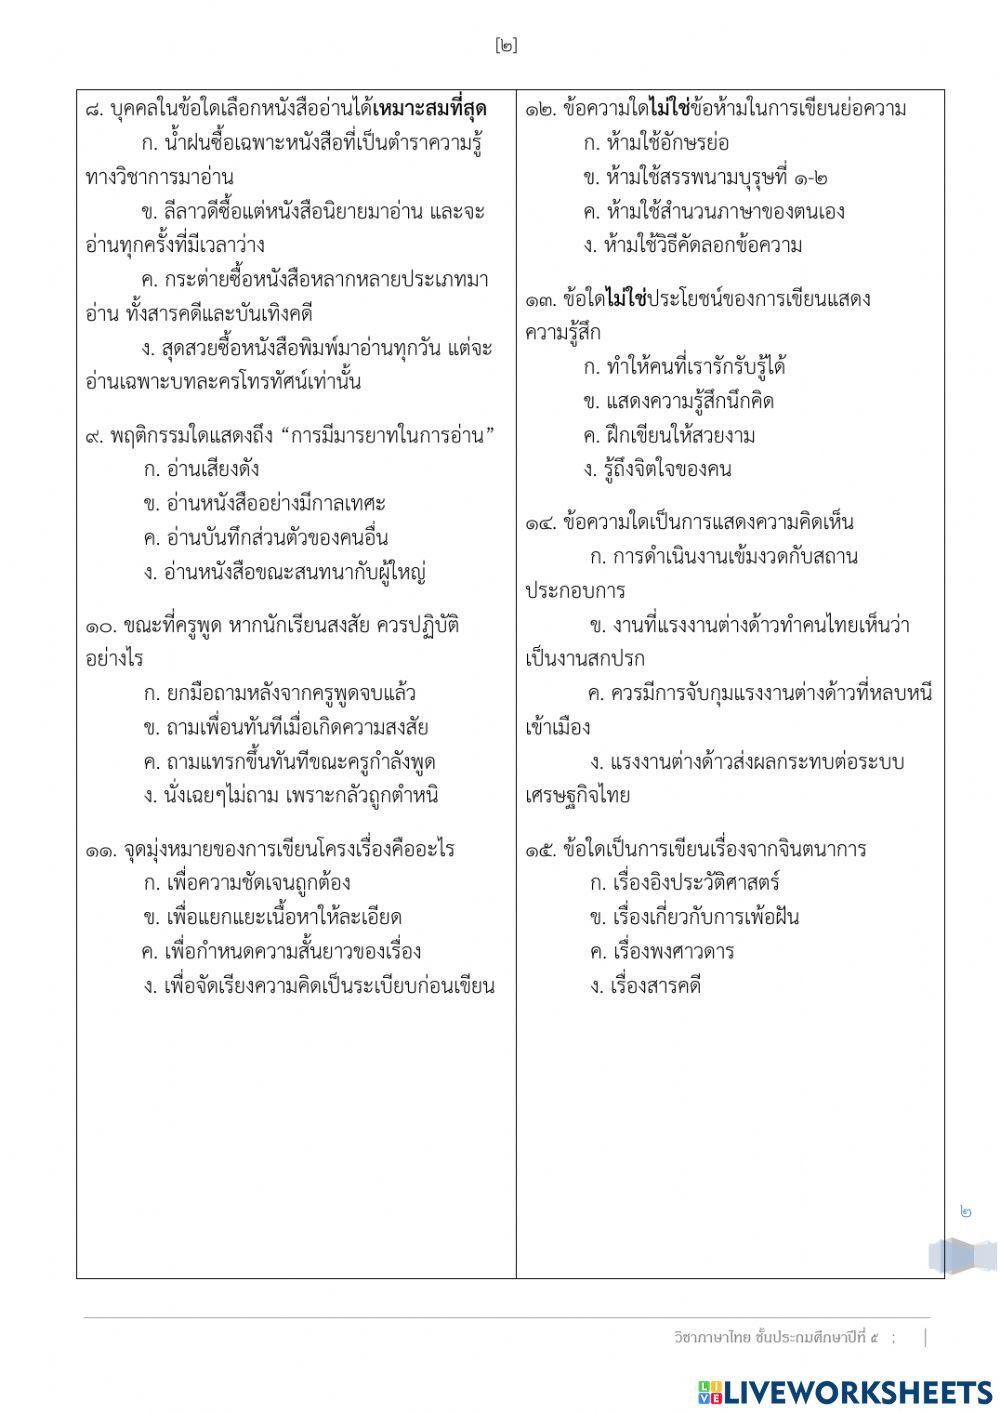 ข้อสอบปลายภาคเรียนที่ 1 ประจำปีการศึกษา 2564 วิชาภาษาไทย ป.5-7